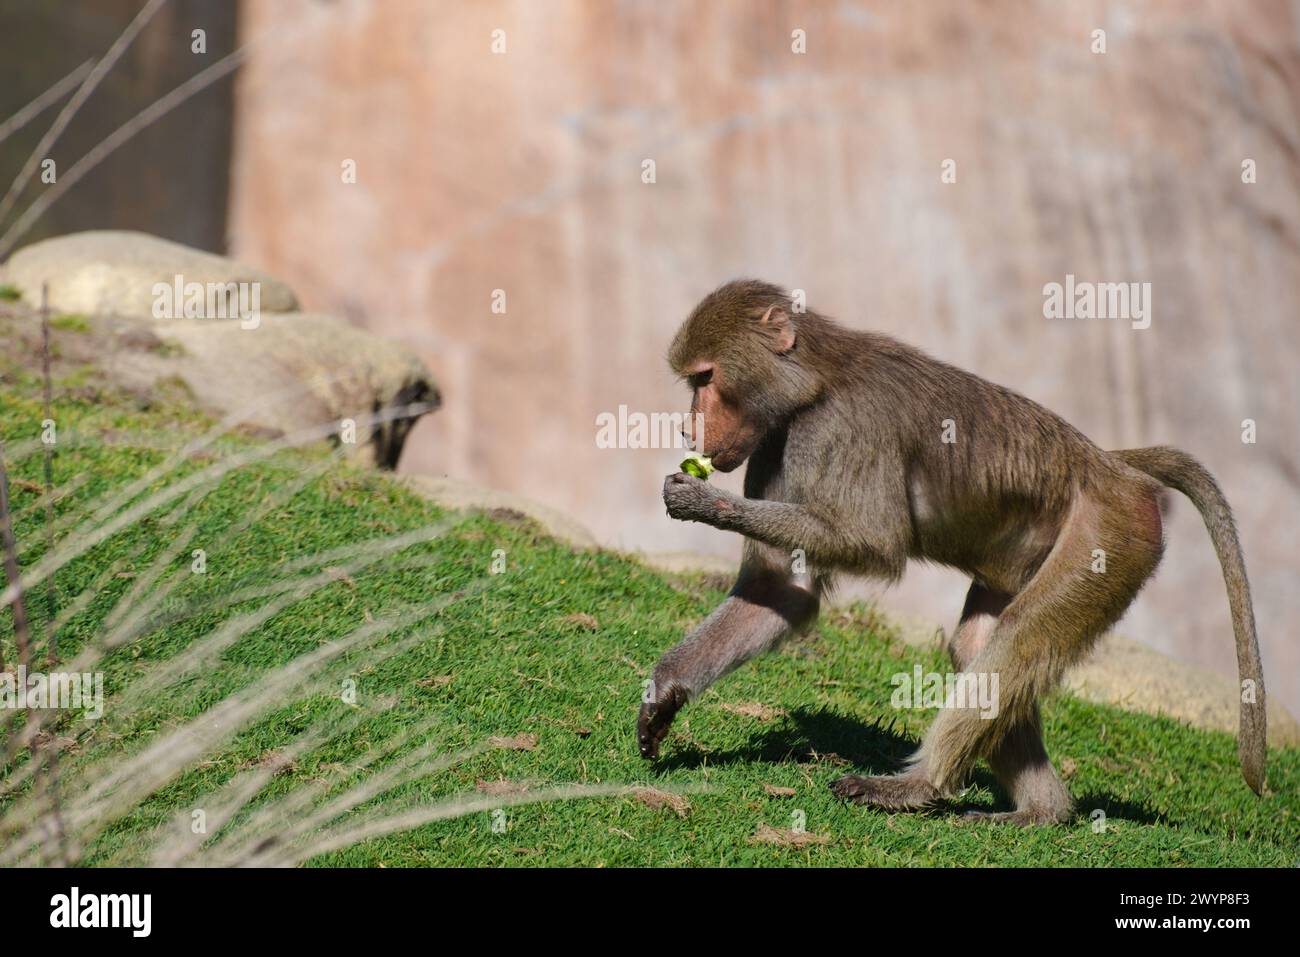 Mignon babouin marchant tout en consommant des fruits. Image animée du primate en mouvement, mettant en valeur son corps de fourrure fine. Banque D'Images